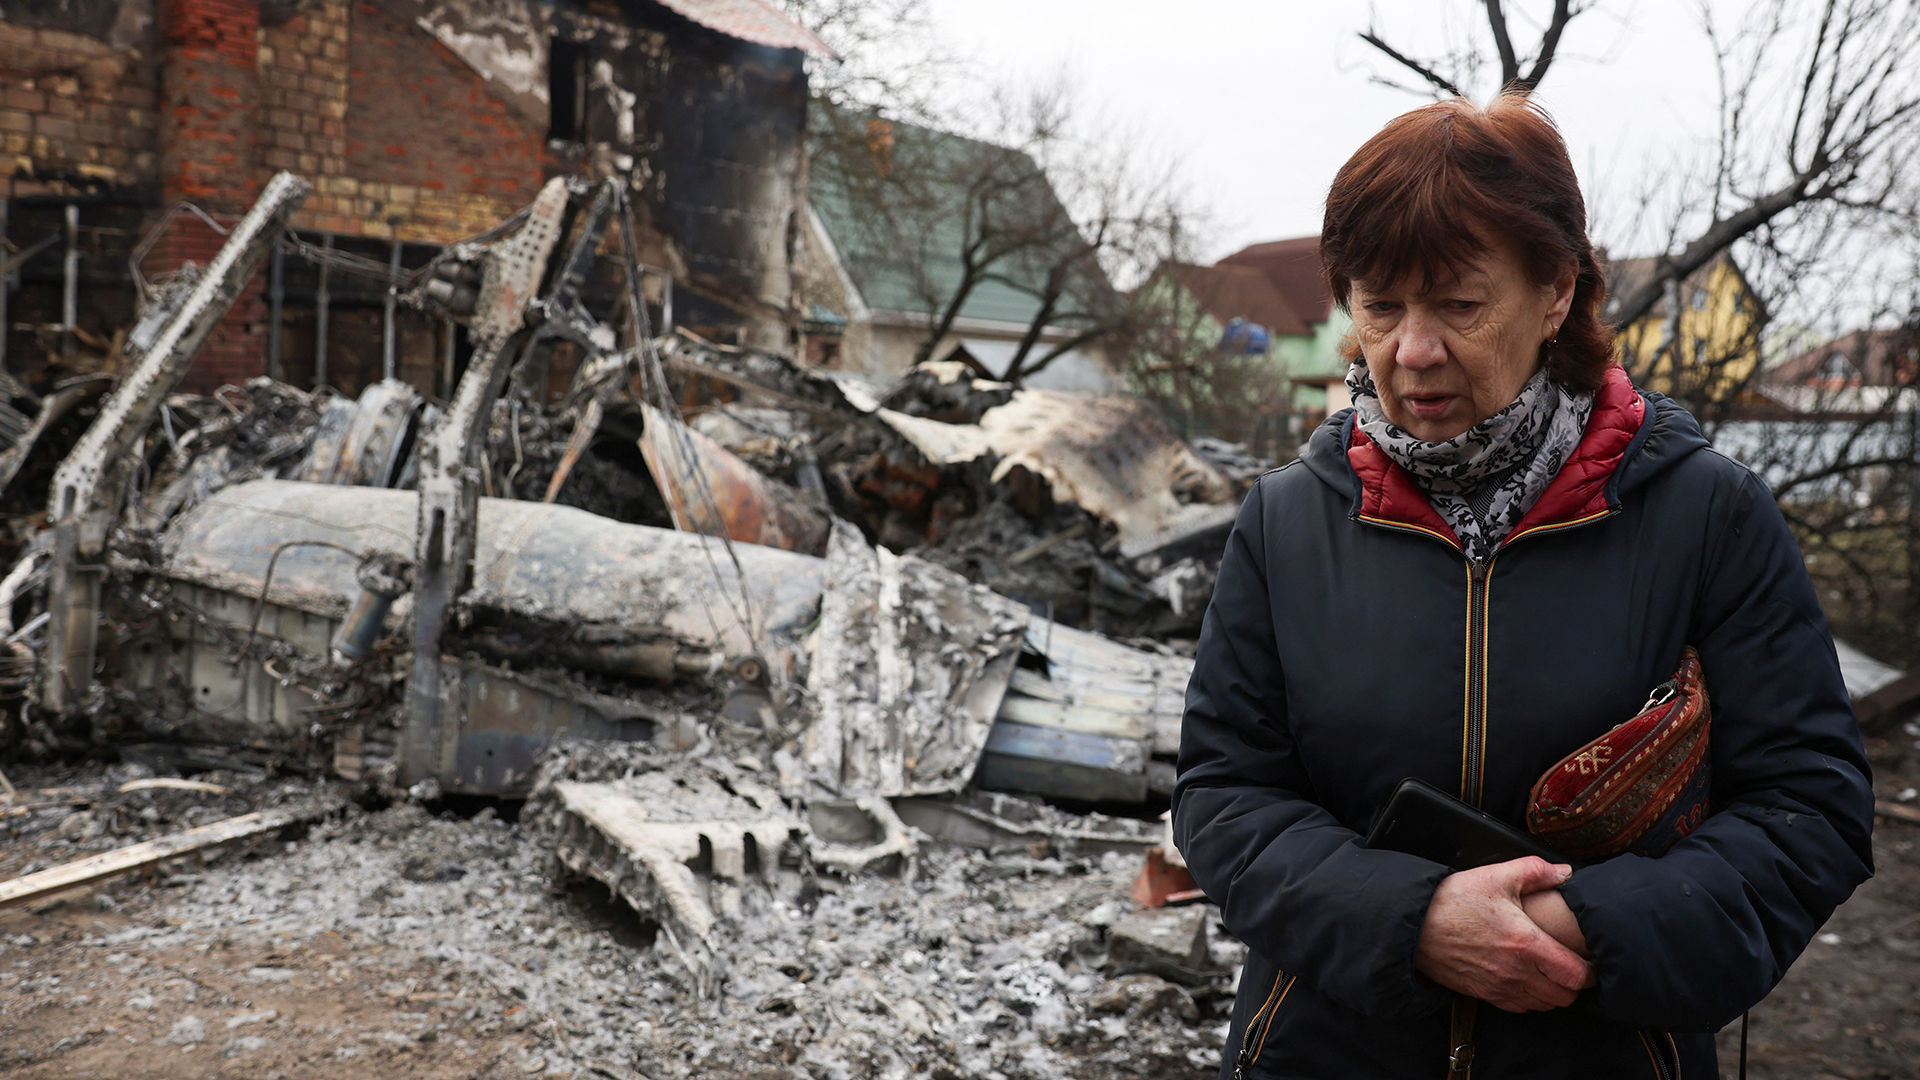 Eine Frau geht um das Wrack eines nicht identifizierten Flugzeugs herum, das in einem Wohngebiet in Kiew in ein Haus stürzte. | REUTERS